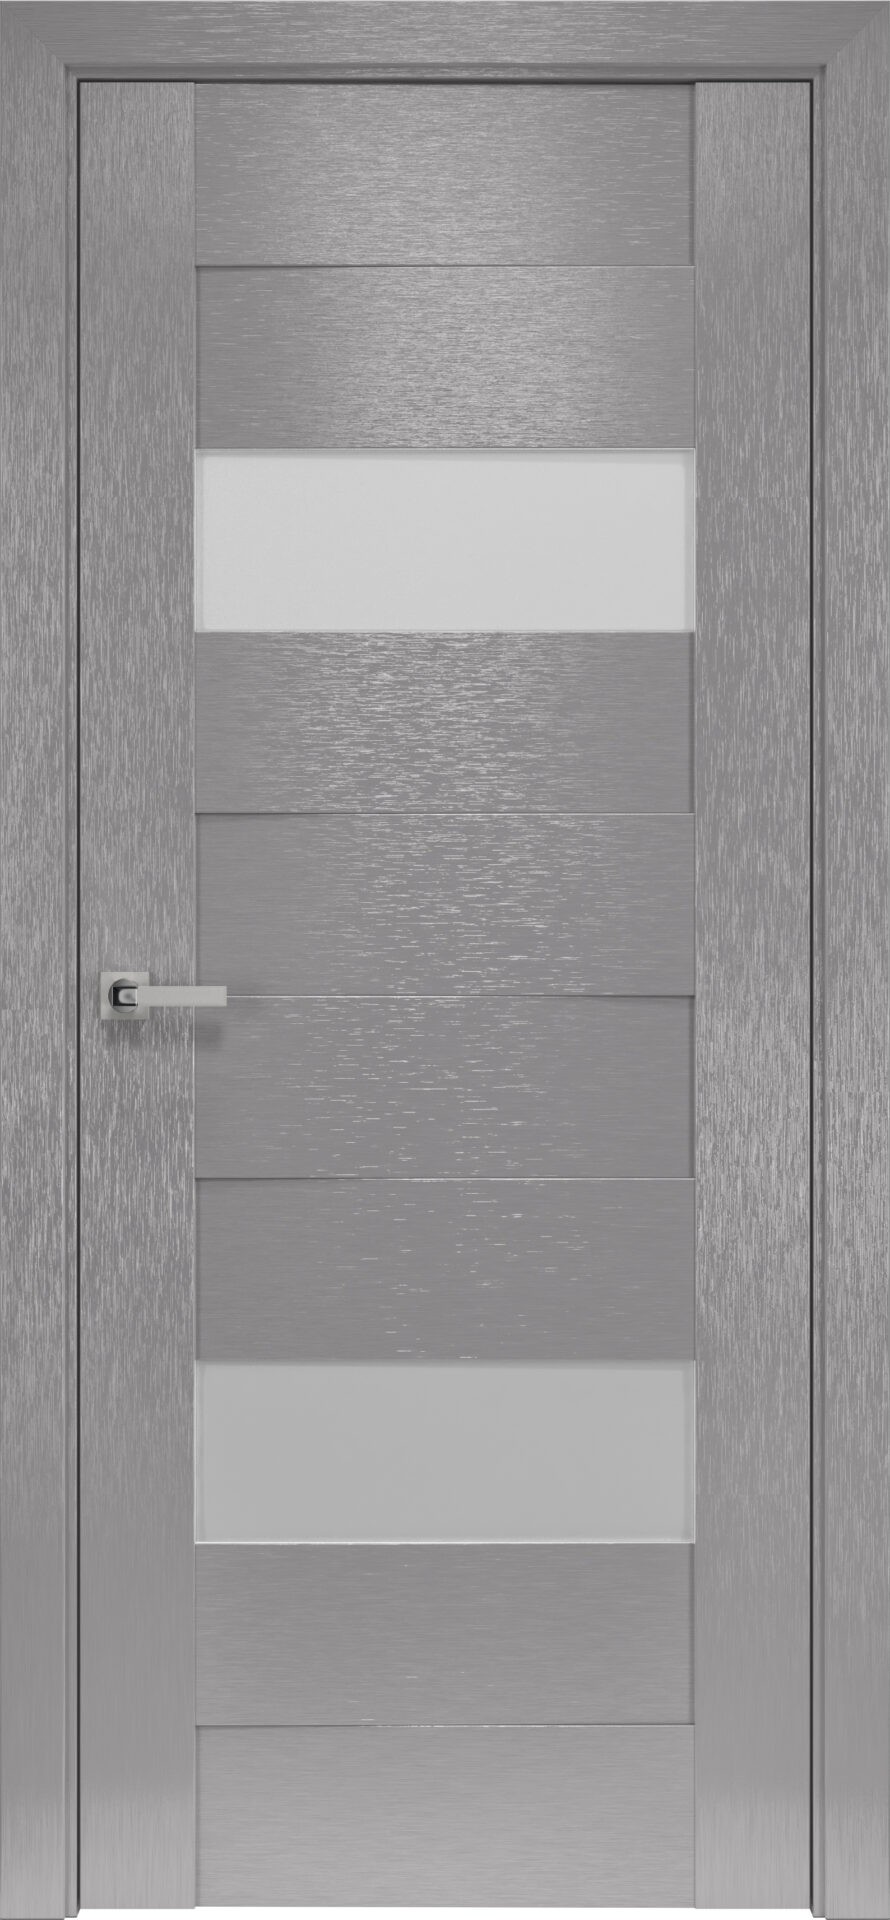 Межкомнатные двери Женева со стеклом сатин